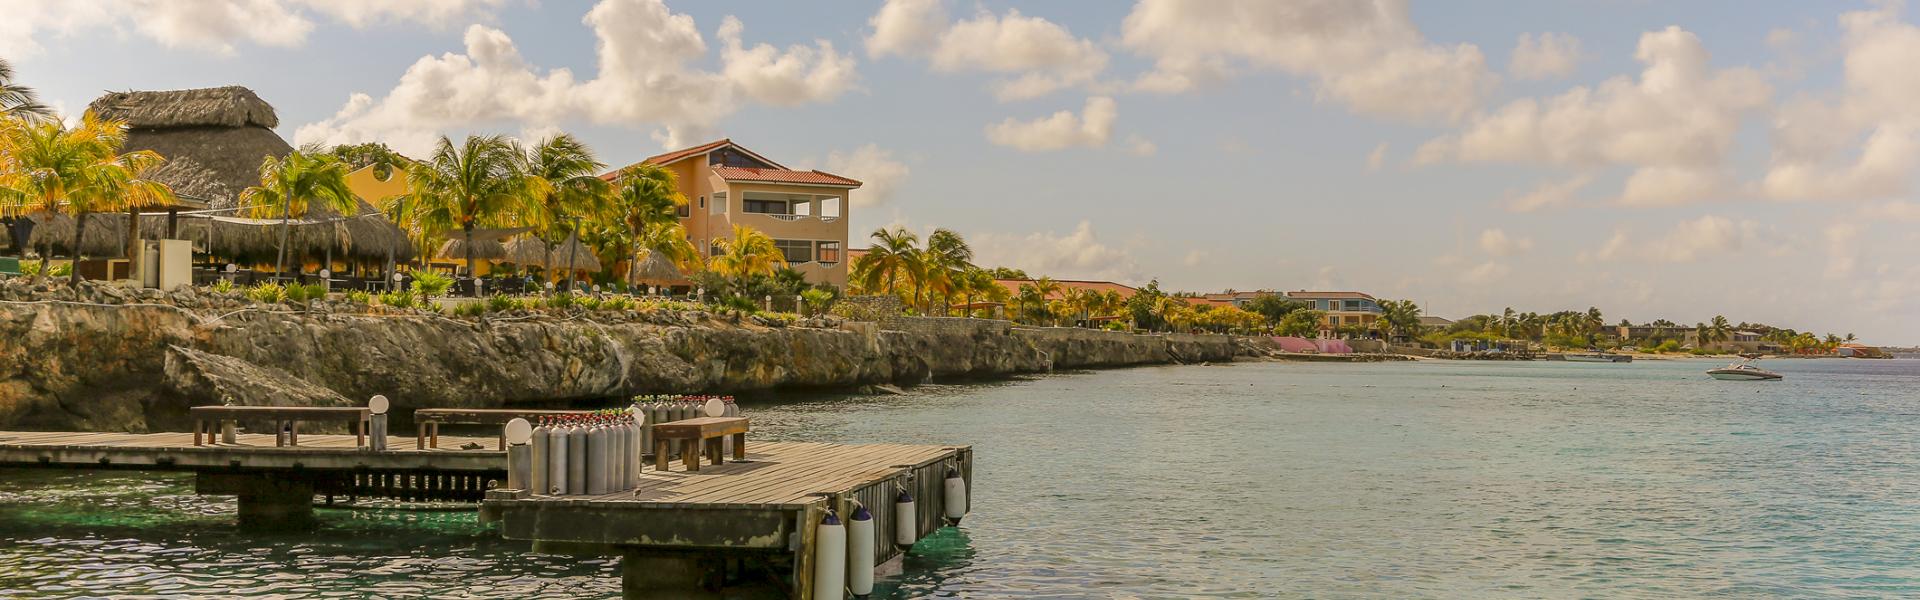 Ferienwohnungen & Ferienhäuser für Urlaub auf Bonaire - Casamundo